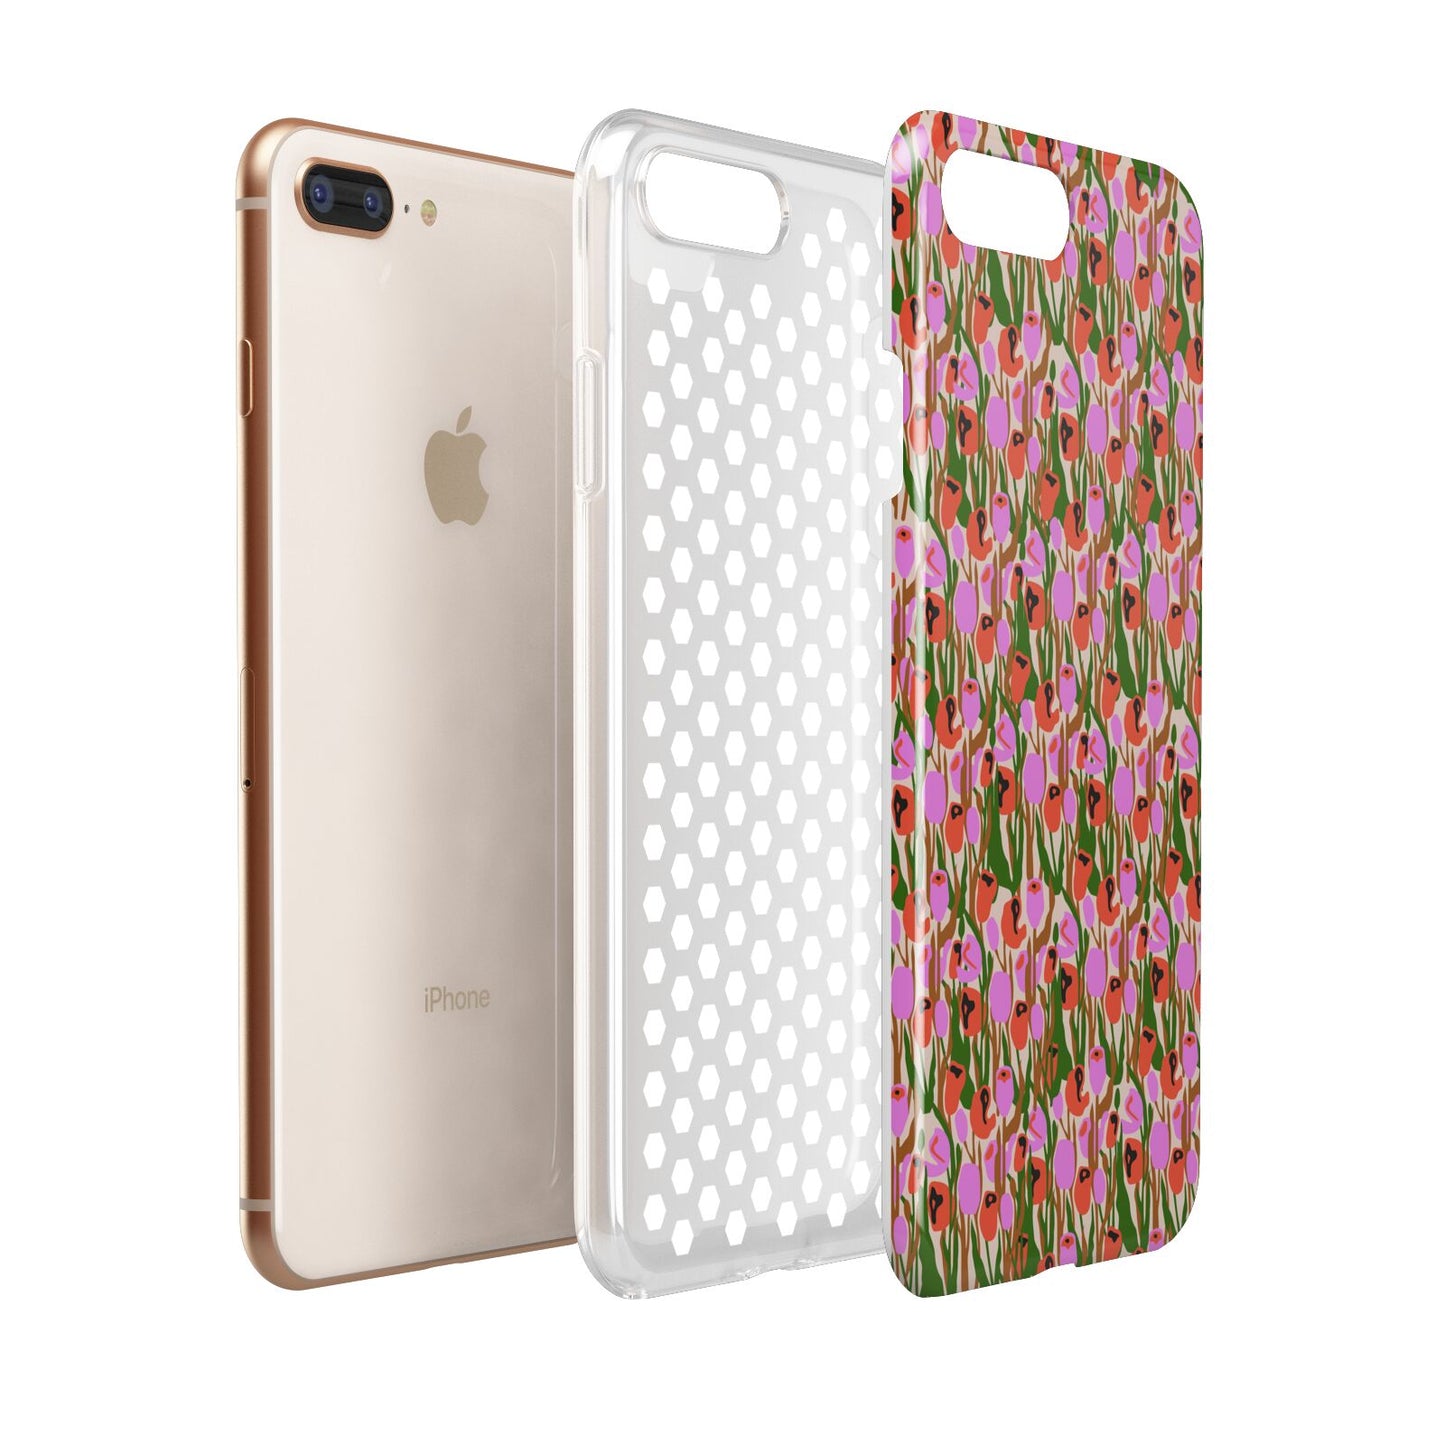 Floral Apple iPhone 7 8 Plus 3D Tough Case Expanded View